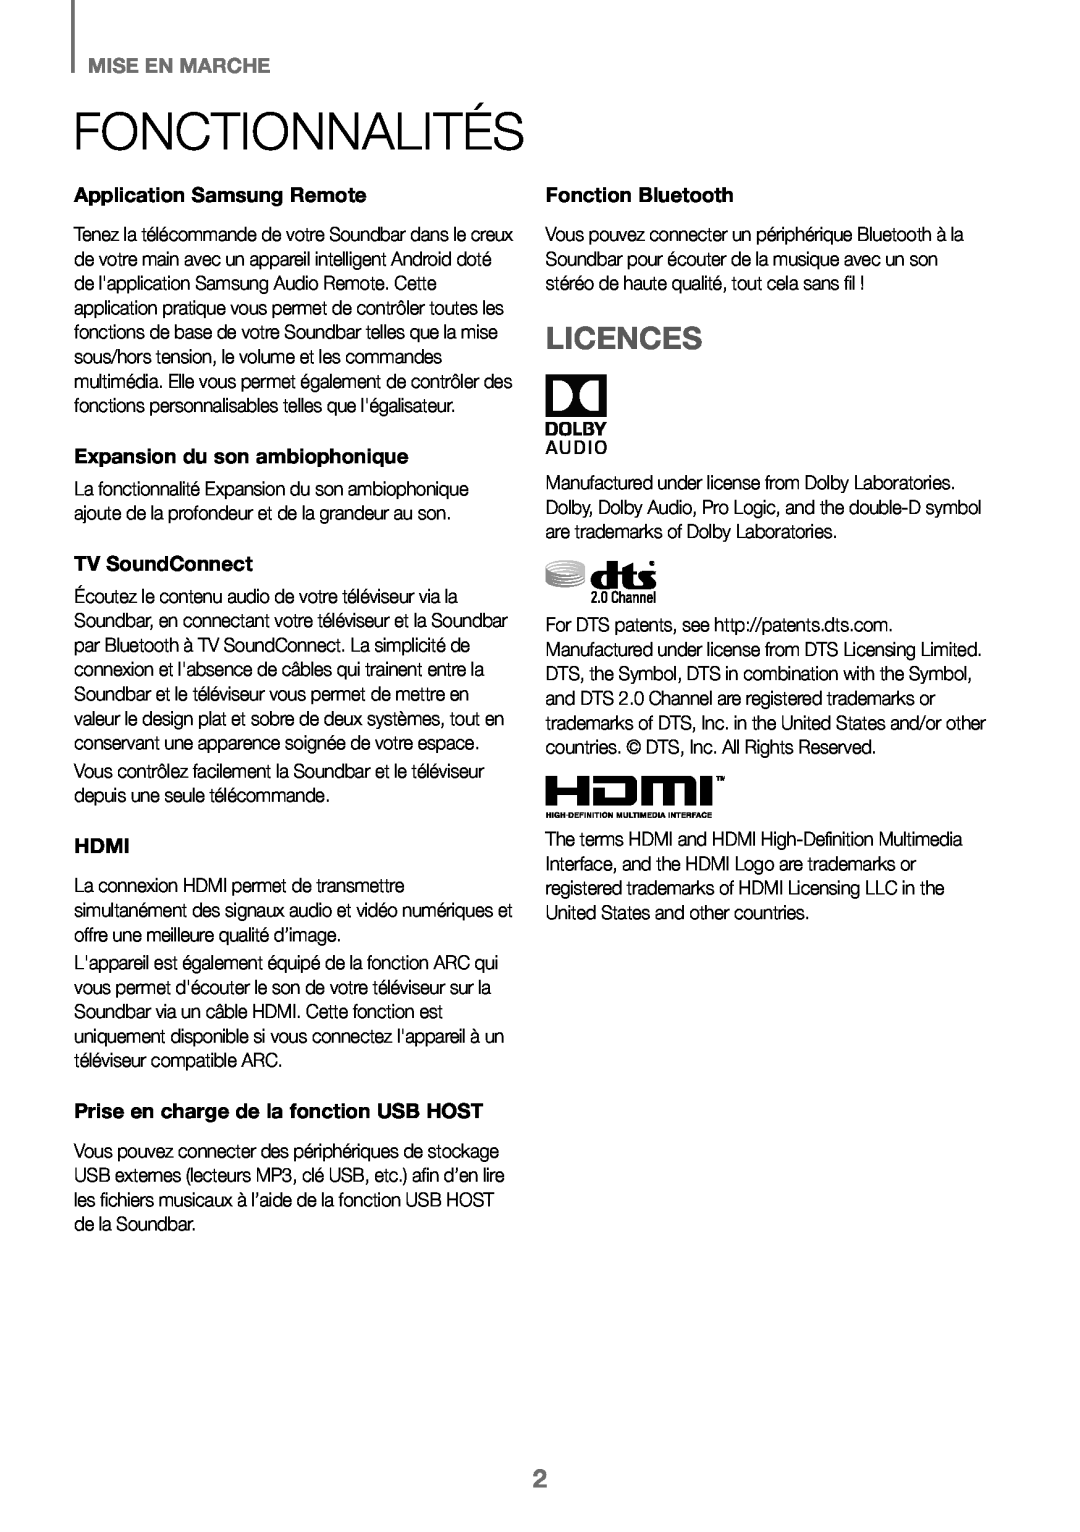 Samsung HW-J450/EN, HW-K450/EN, HW-J450/ZF, HW-K450/ZF manual Fonctionnalités, Licences, Mise En Marche 